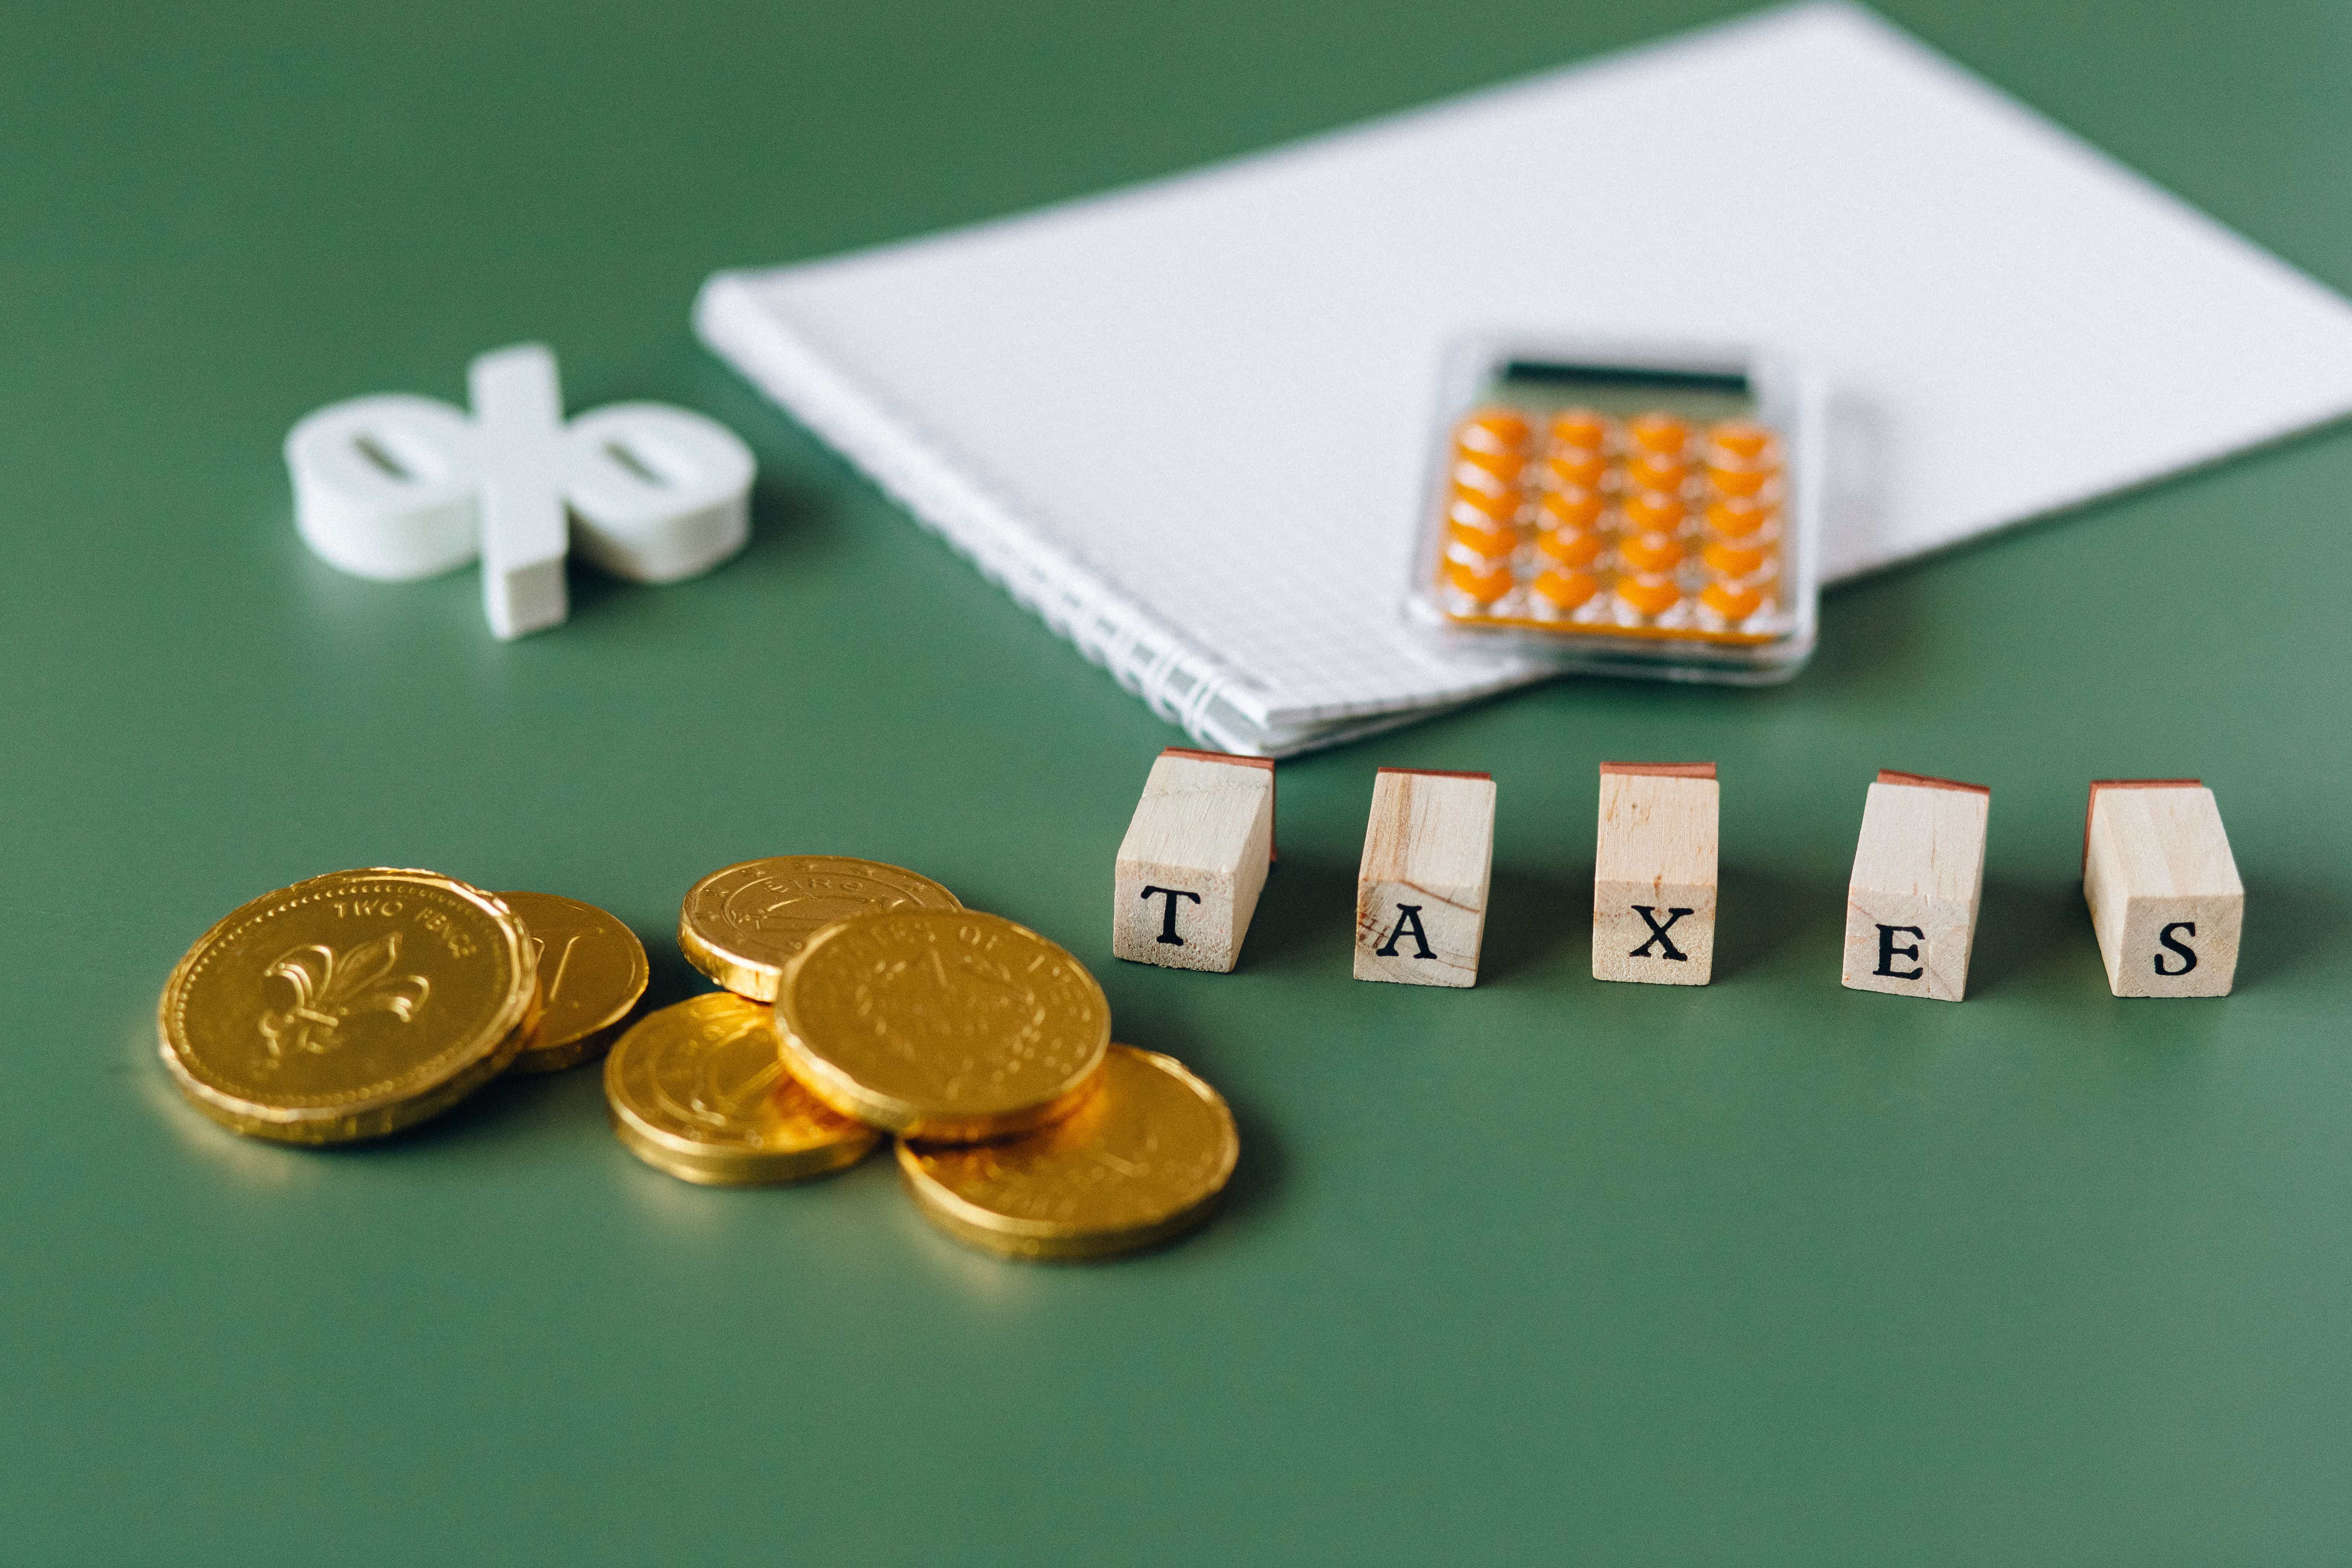 Afinal, quais as taxas e tarifas cobradas? Fonte: Pexels.